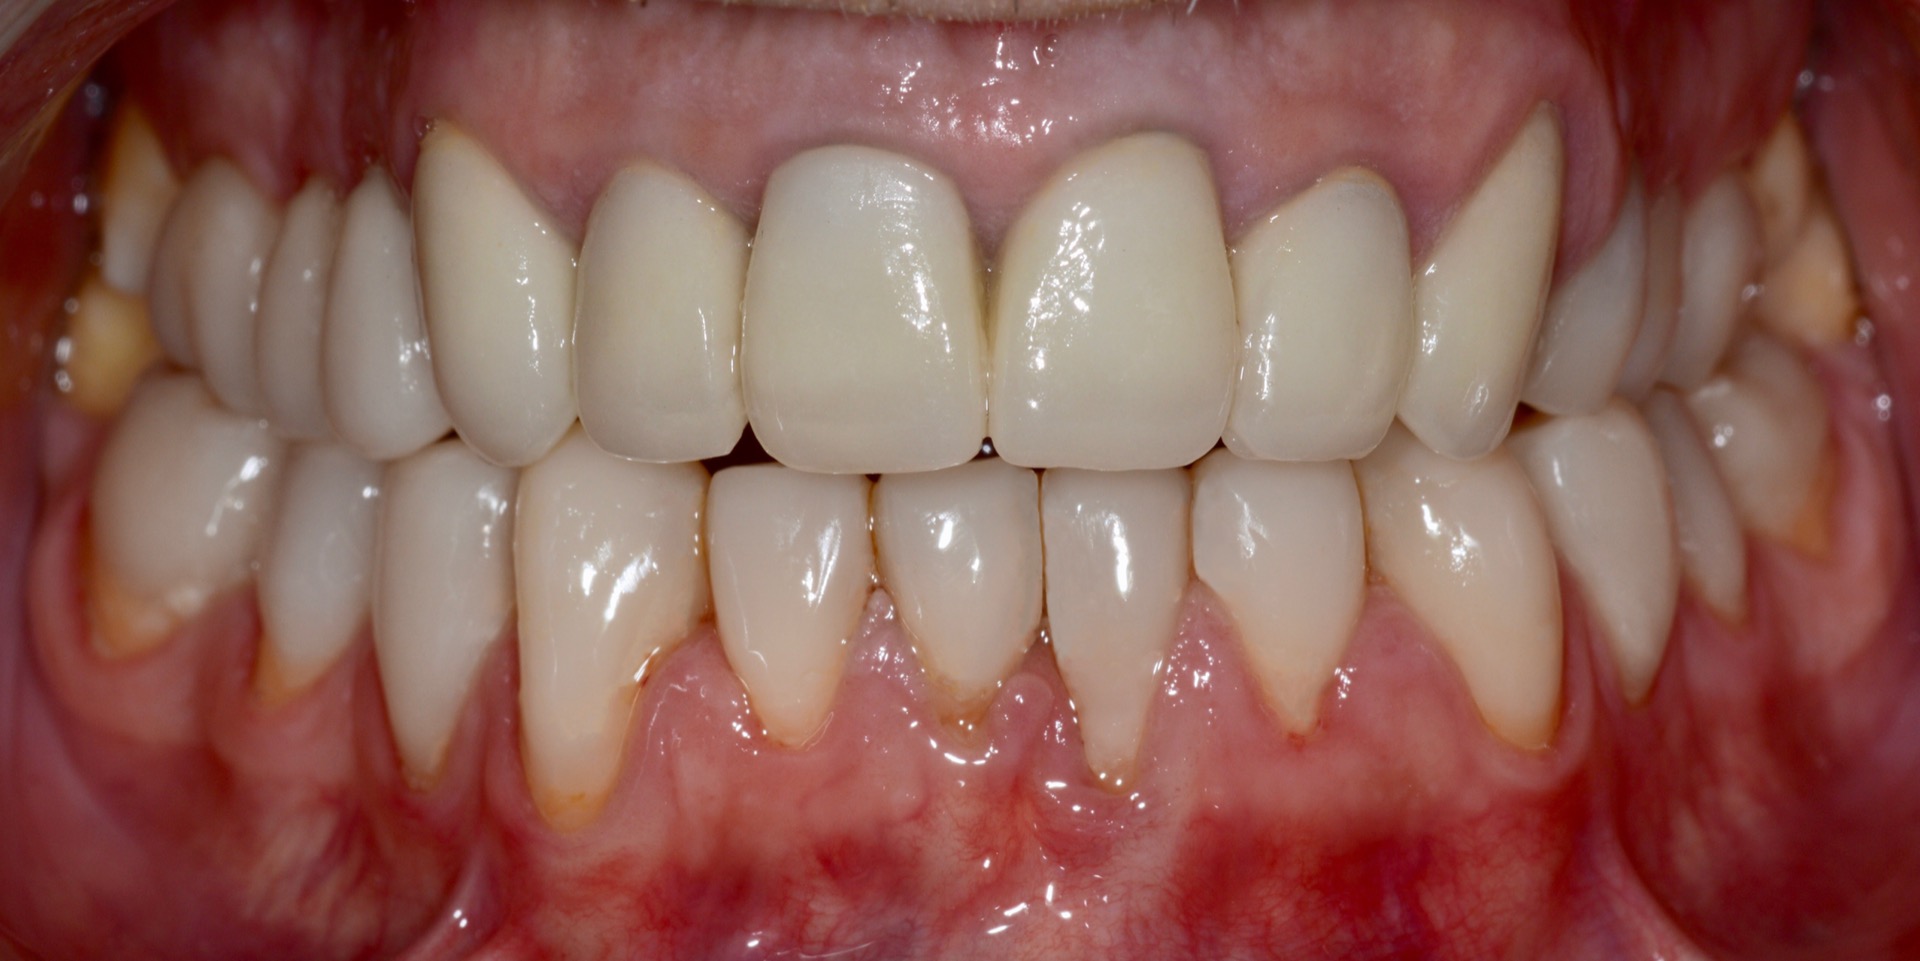 Τελική κατάσταση - Πρόσθια άποψη των αποκαταστάσεων τοποθετημένων στο στόμα - Αποκατάσταση της αισθητικής και της σύγκλεισης του ασθενούς.